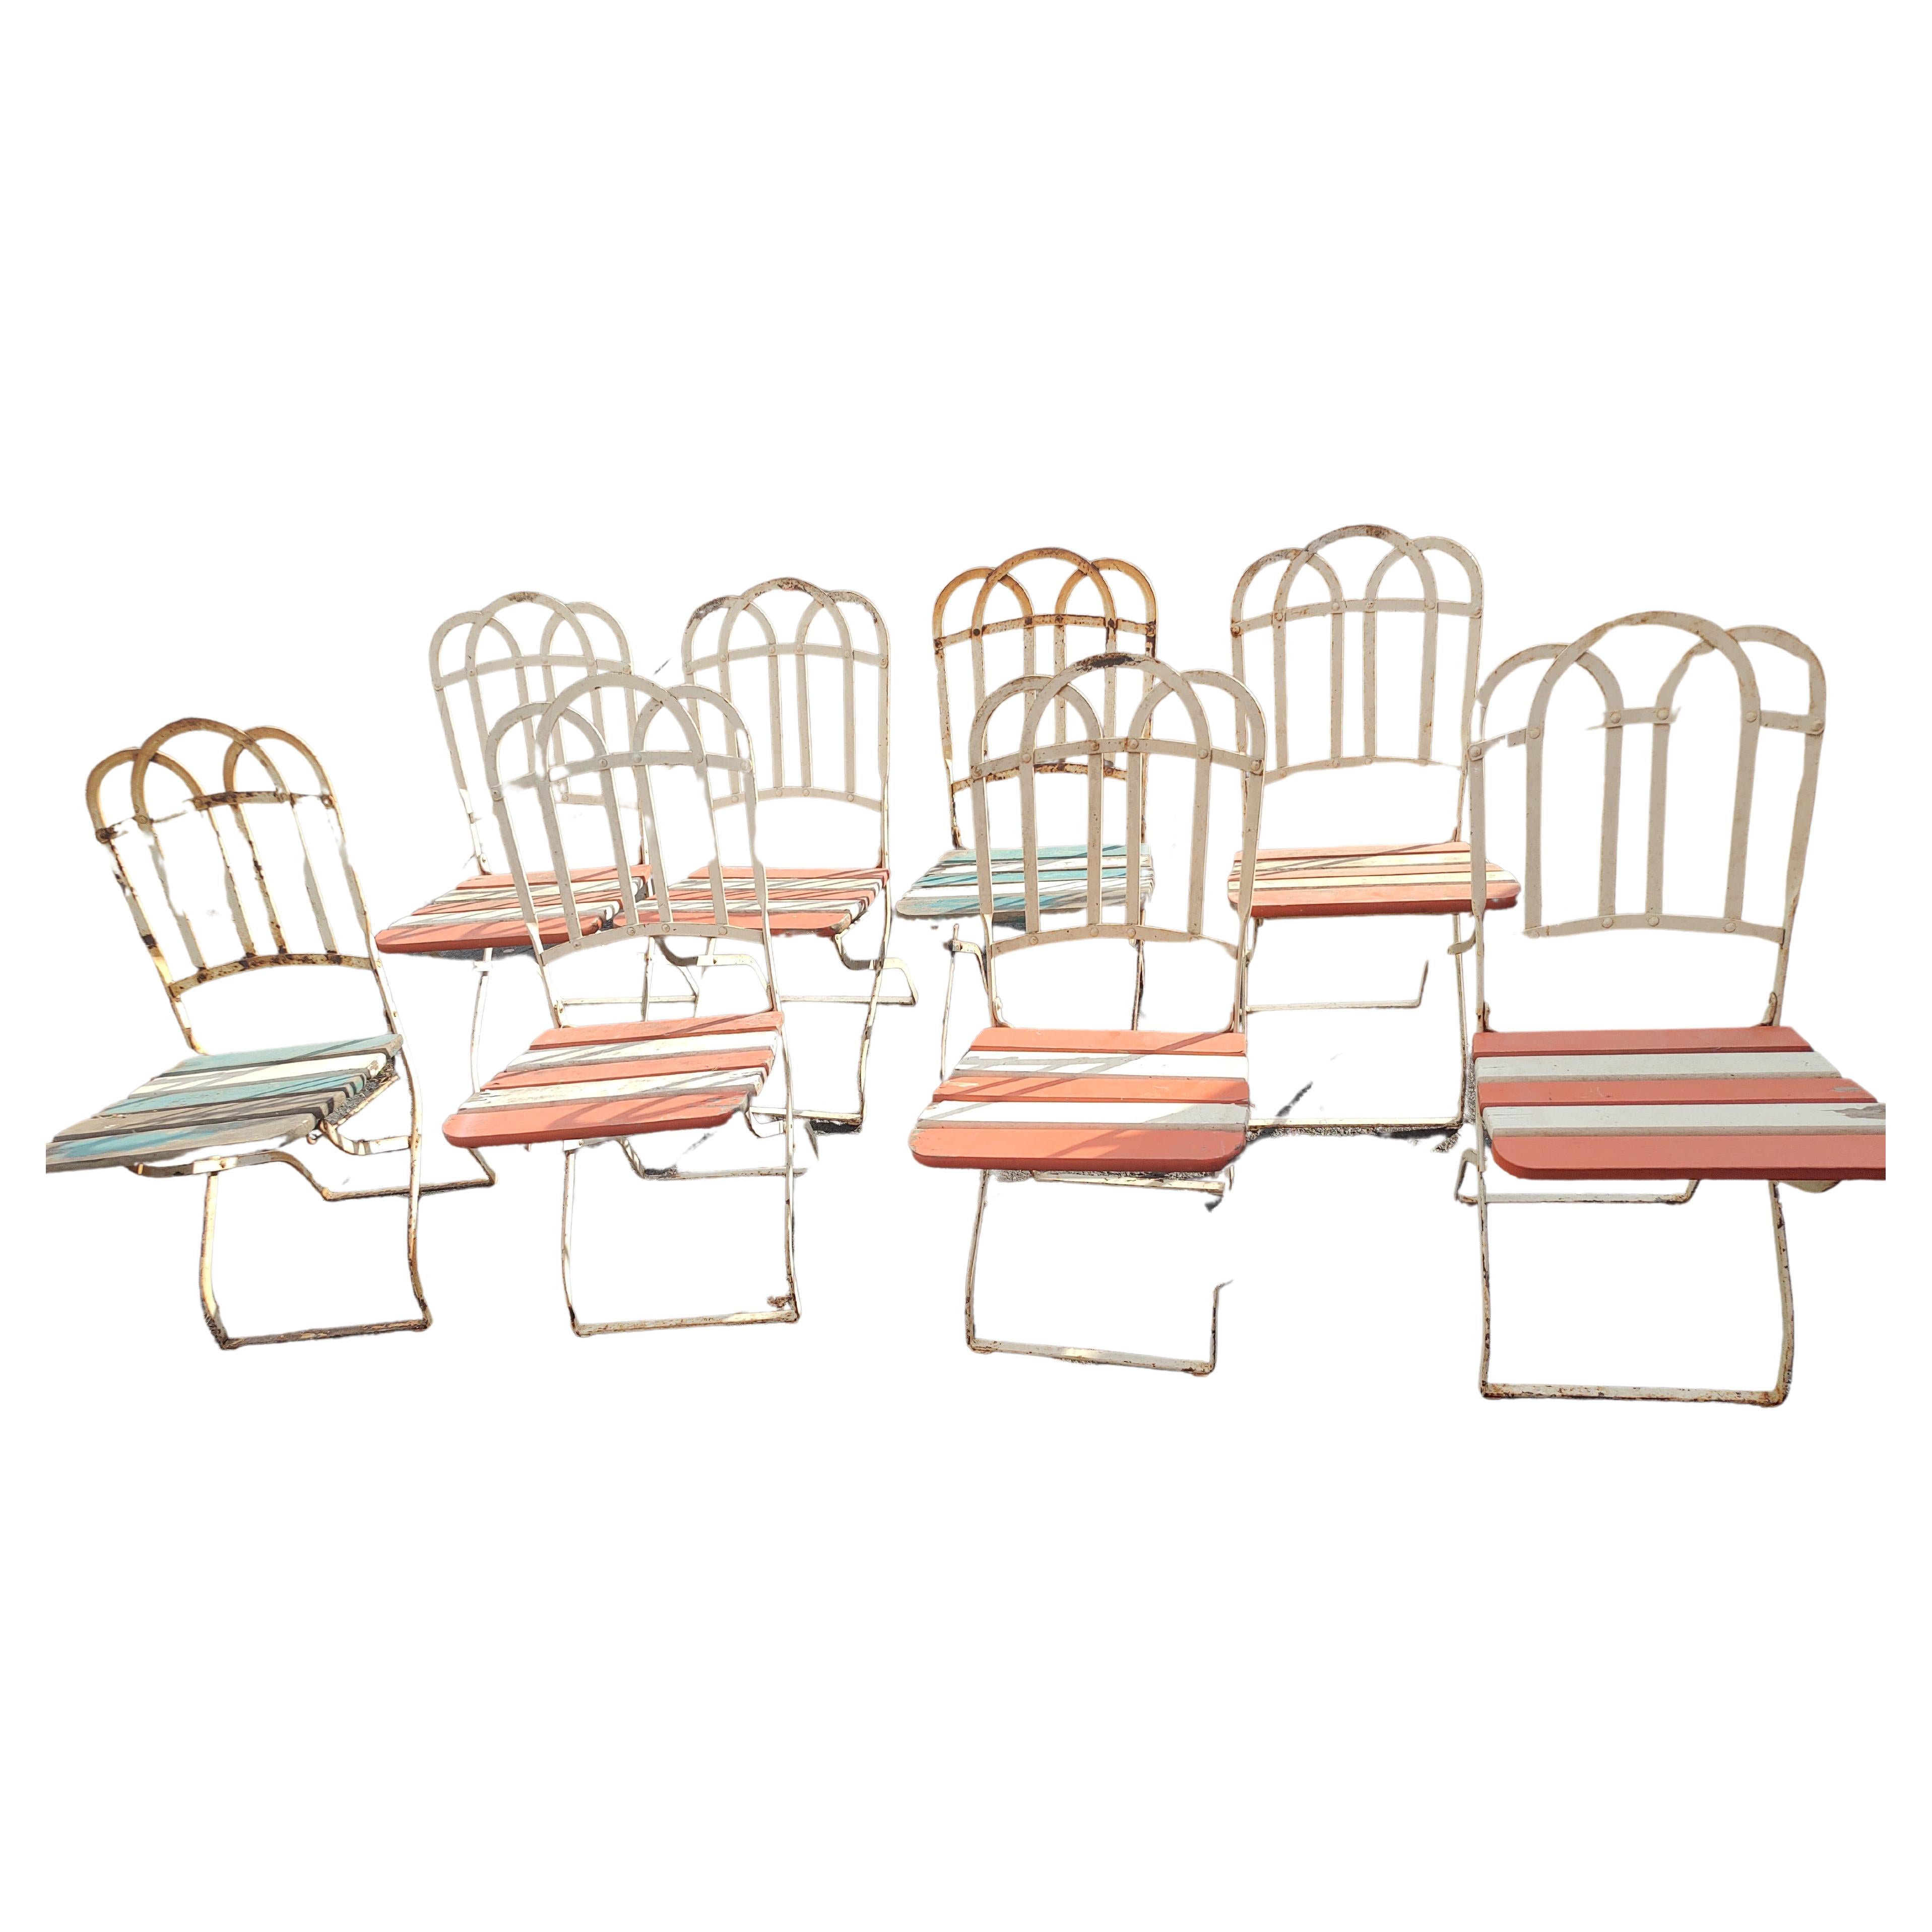 Fabuleux ensemble de 8 chaises pliantes pour salle à manger de jardin avec un peu du charme et de l'élégance parisiens associés aux cafés français. Les chaises sont en excellent état. Le bois est totalement intact et les mécanismes de pliage